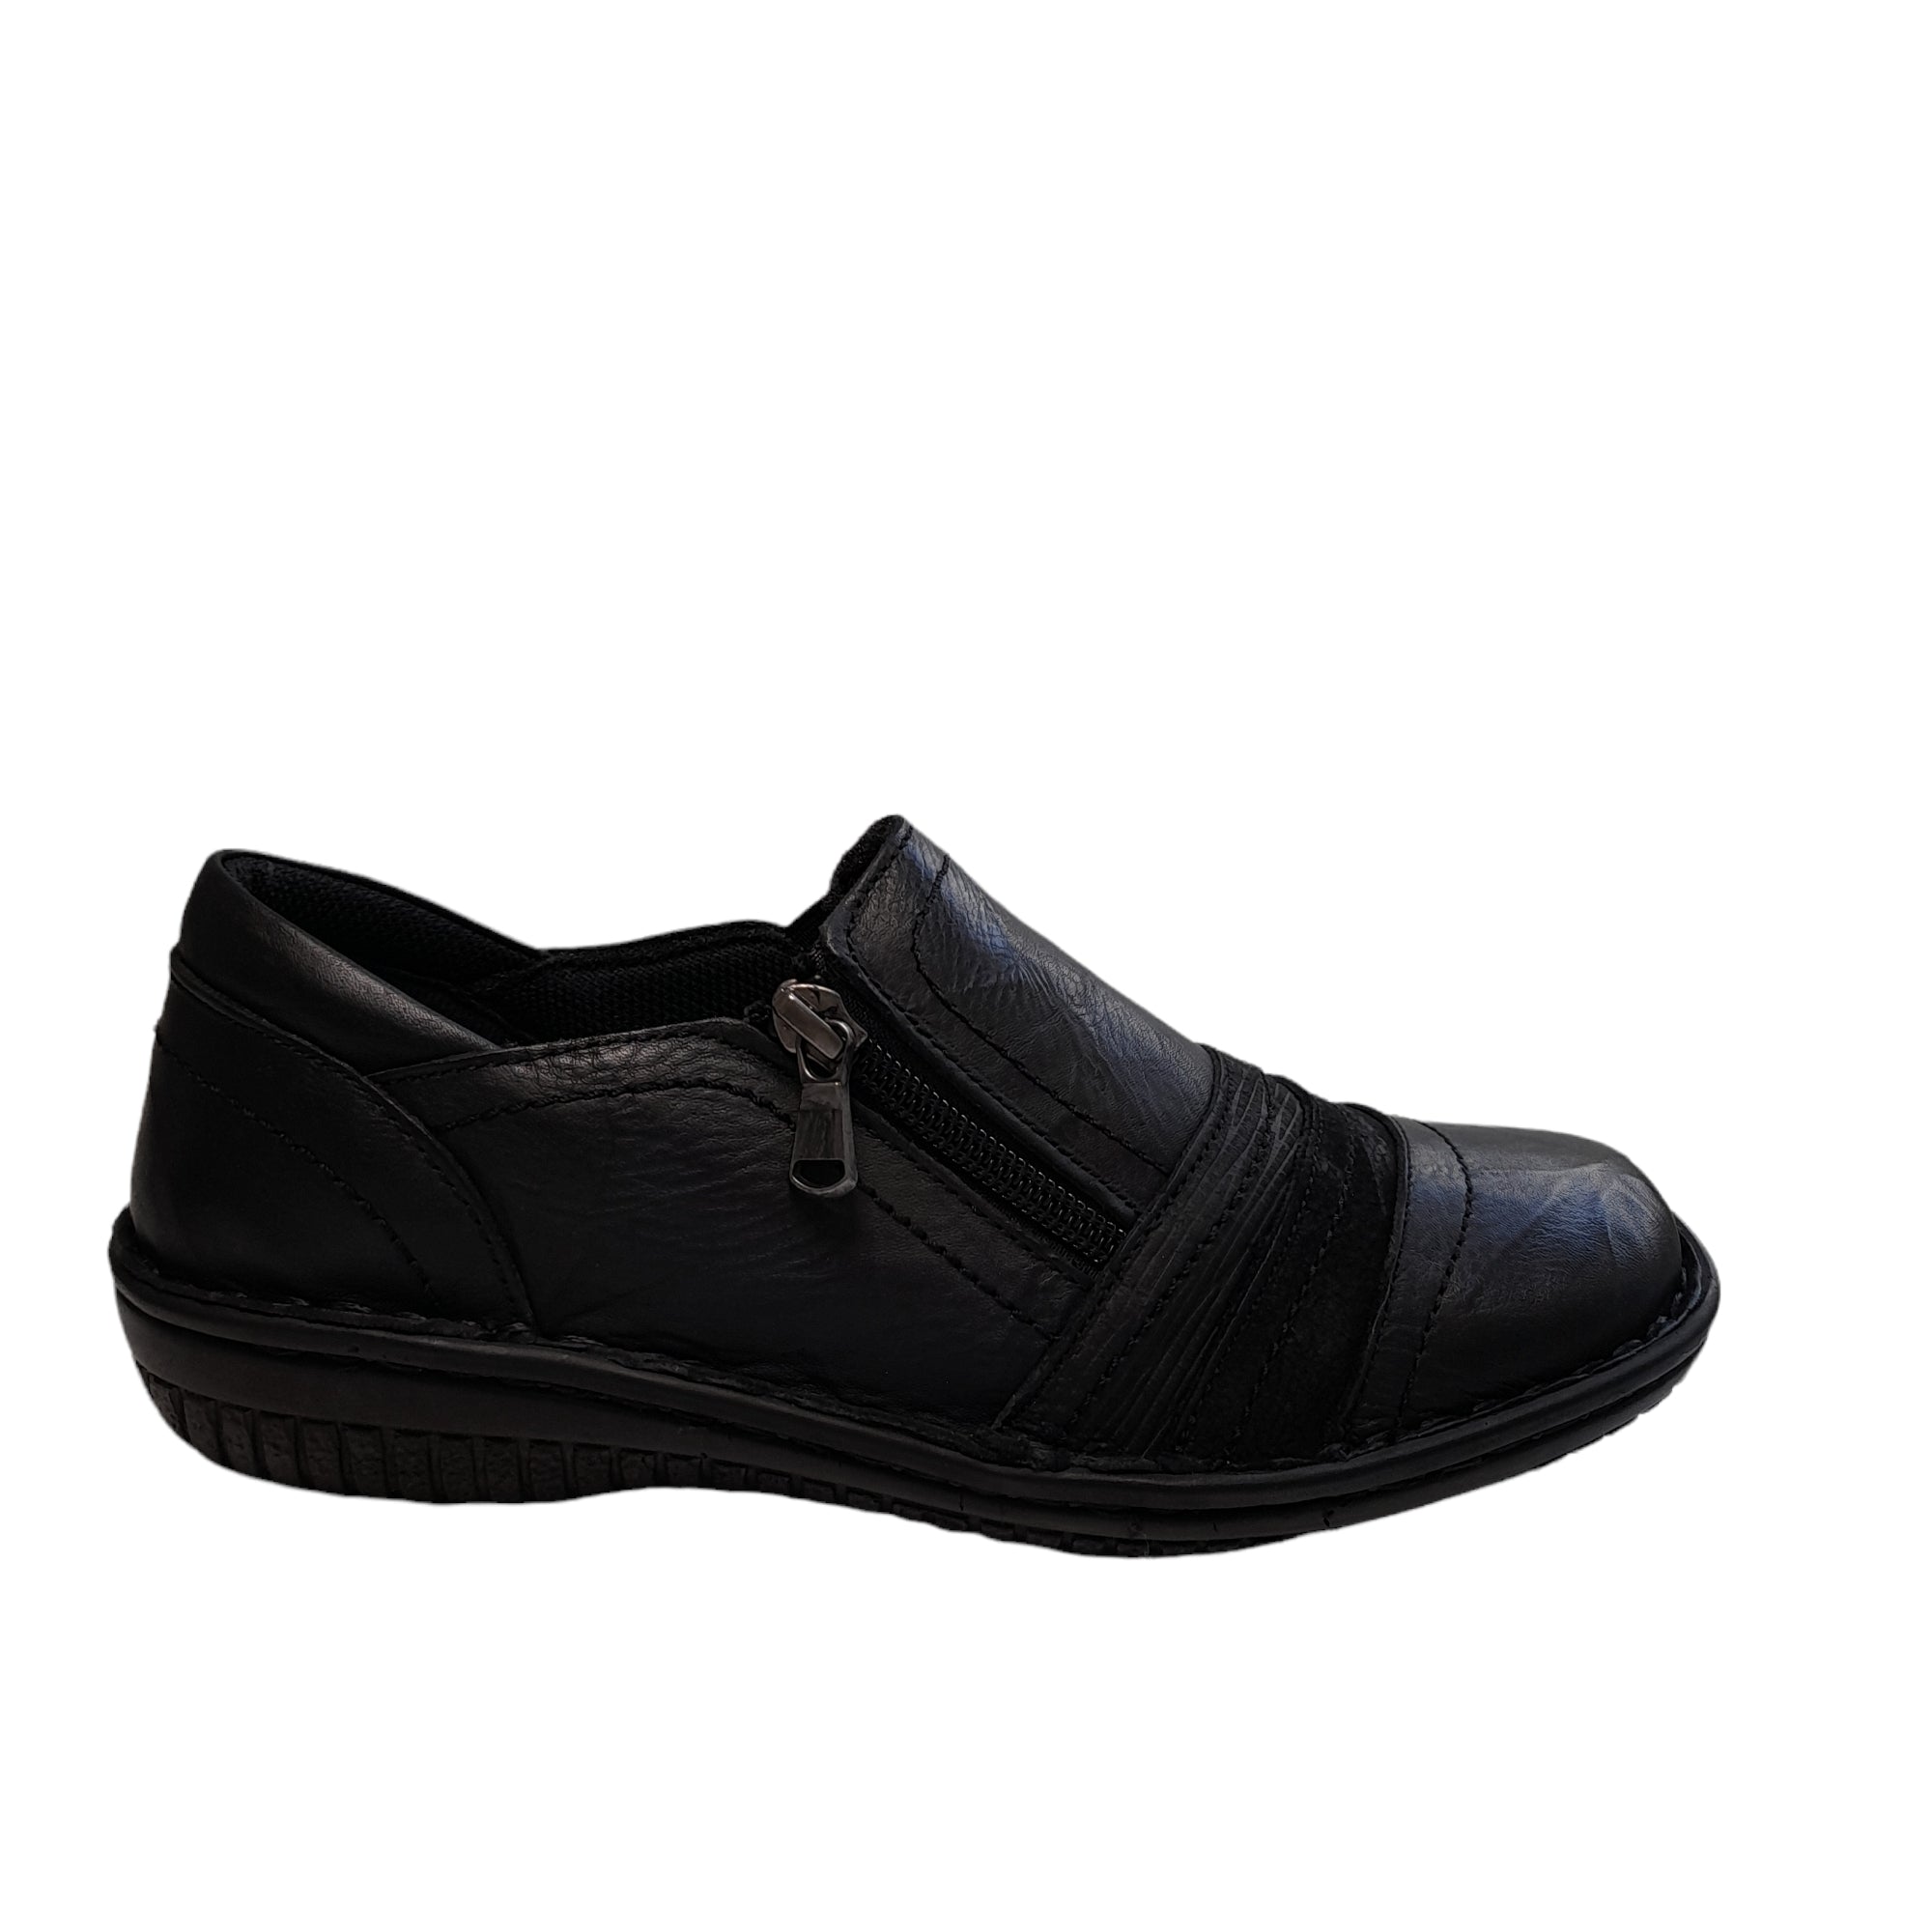 5849-27 - shoe&amp;me - Cabello - Shoe - Shoes, Womens